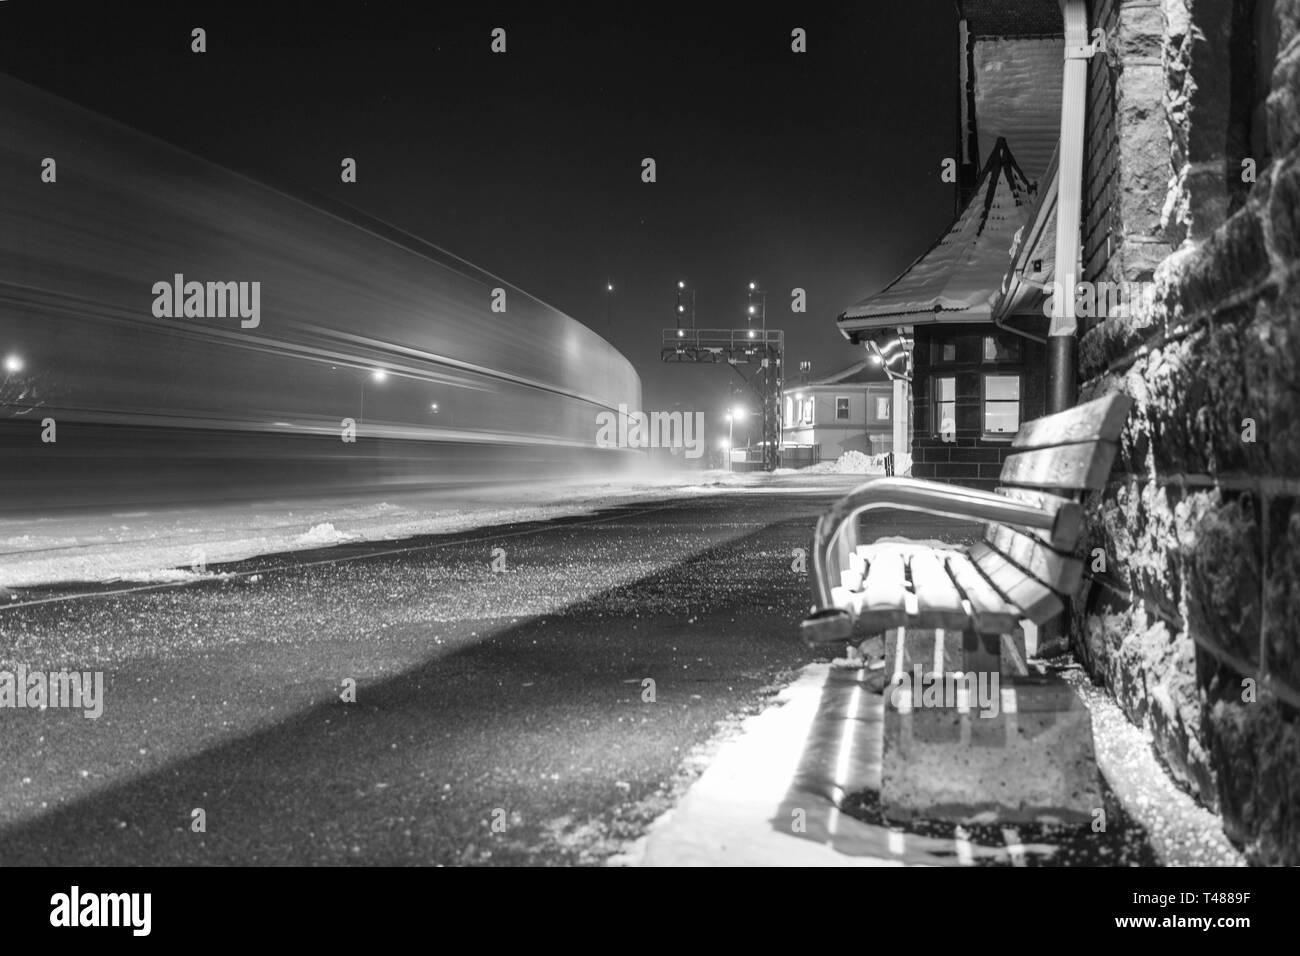 Nationalen Kanadischen Brantford Ontario Frachtcontainer Zug im Freien klaren Himmel Schnee Nacht via rail Canada station Long-shutter Exposition Bewegungsunschärfe Stockfoto